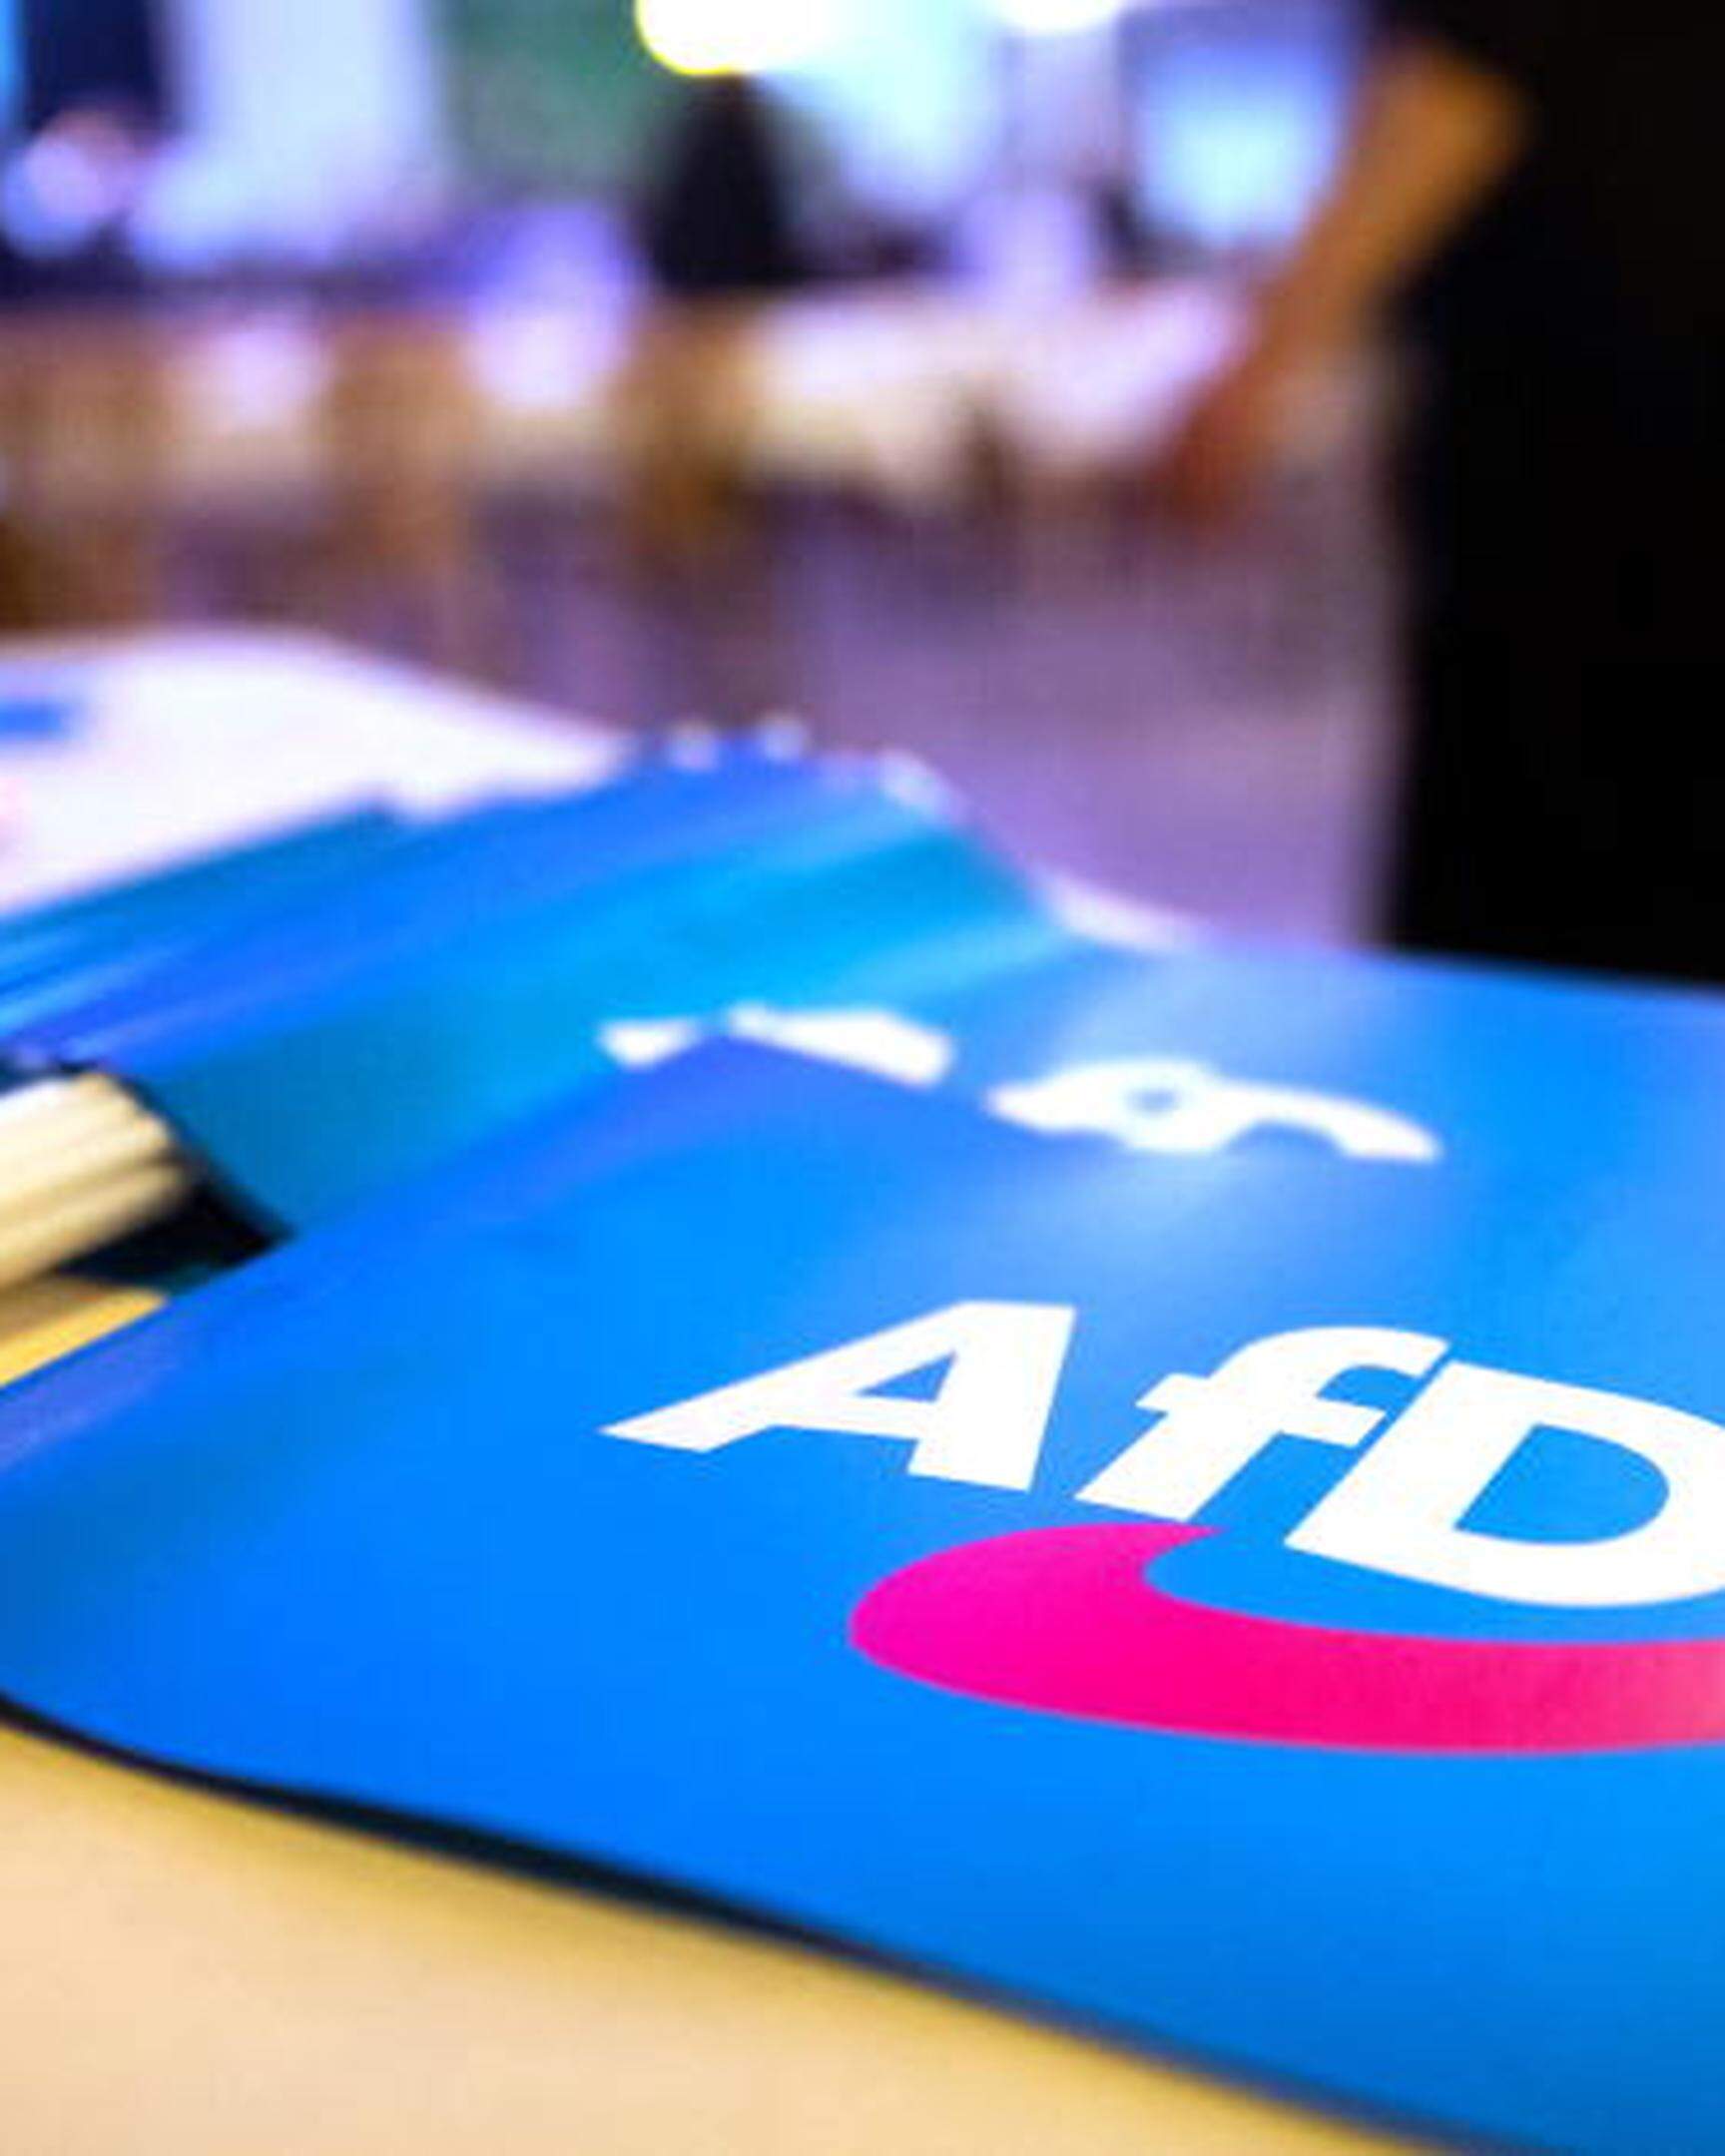 ARCHIV - 24.11.2018, Bayern, Greding: Fähnchen mit dem Logo der AfD liegen beim Landesparteitag der AfD Bayern auf einem Tisch. (Zu dpa «FDP-Fraktionschef gegen AfD-Verbot - Sänze sei ein Verfassungsfeind») Foto: Daniel Karmann/dpa +++ dpa-Bildfunk +++